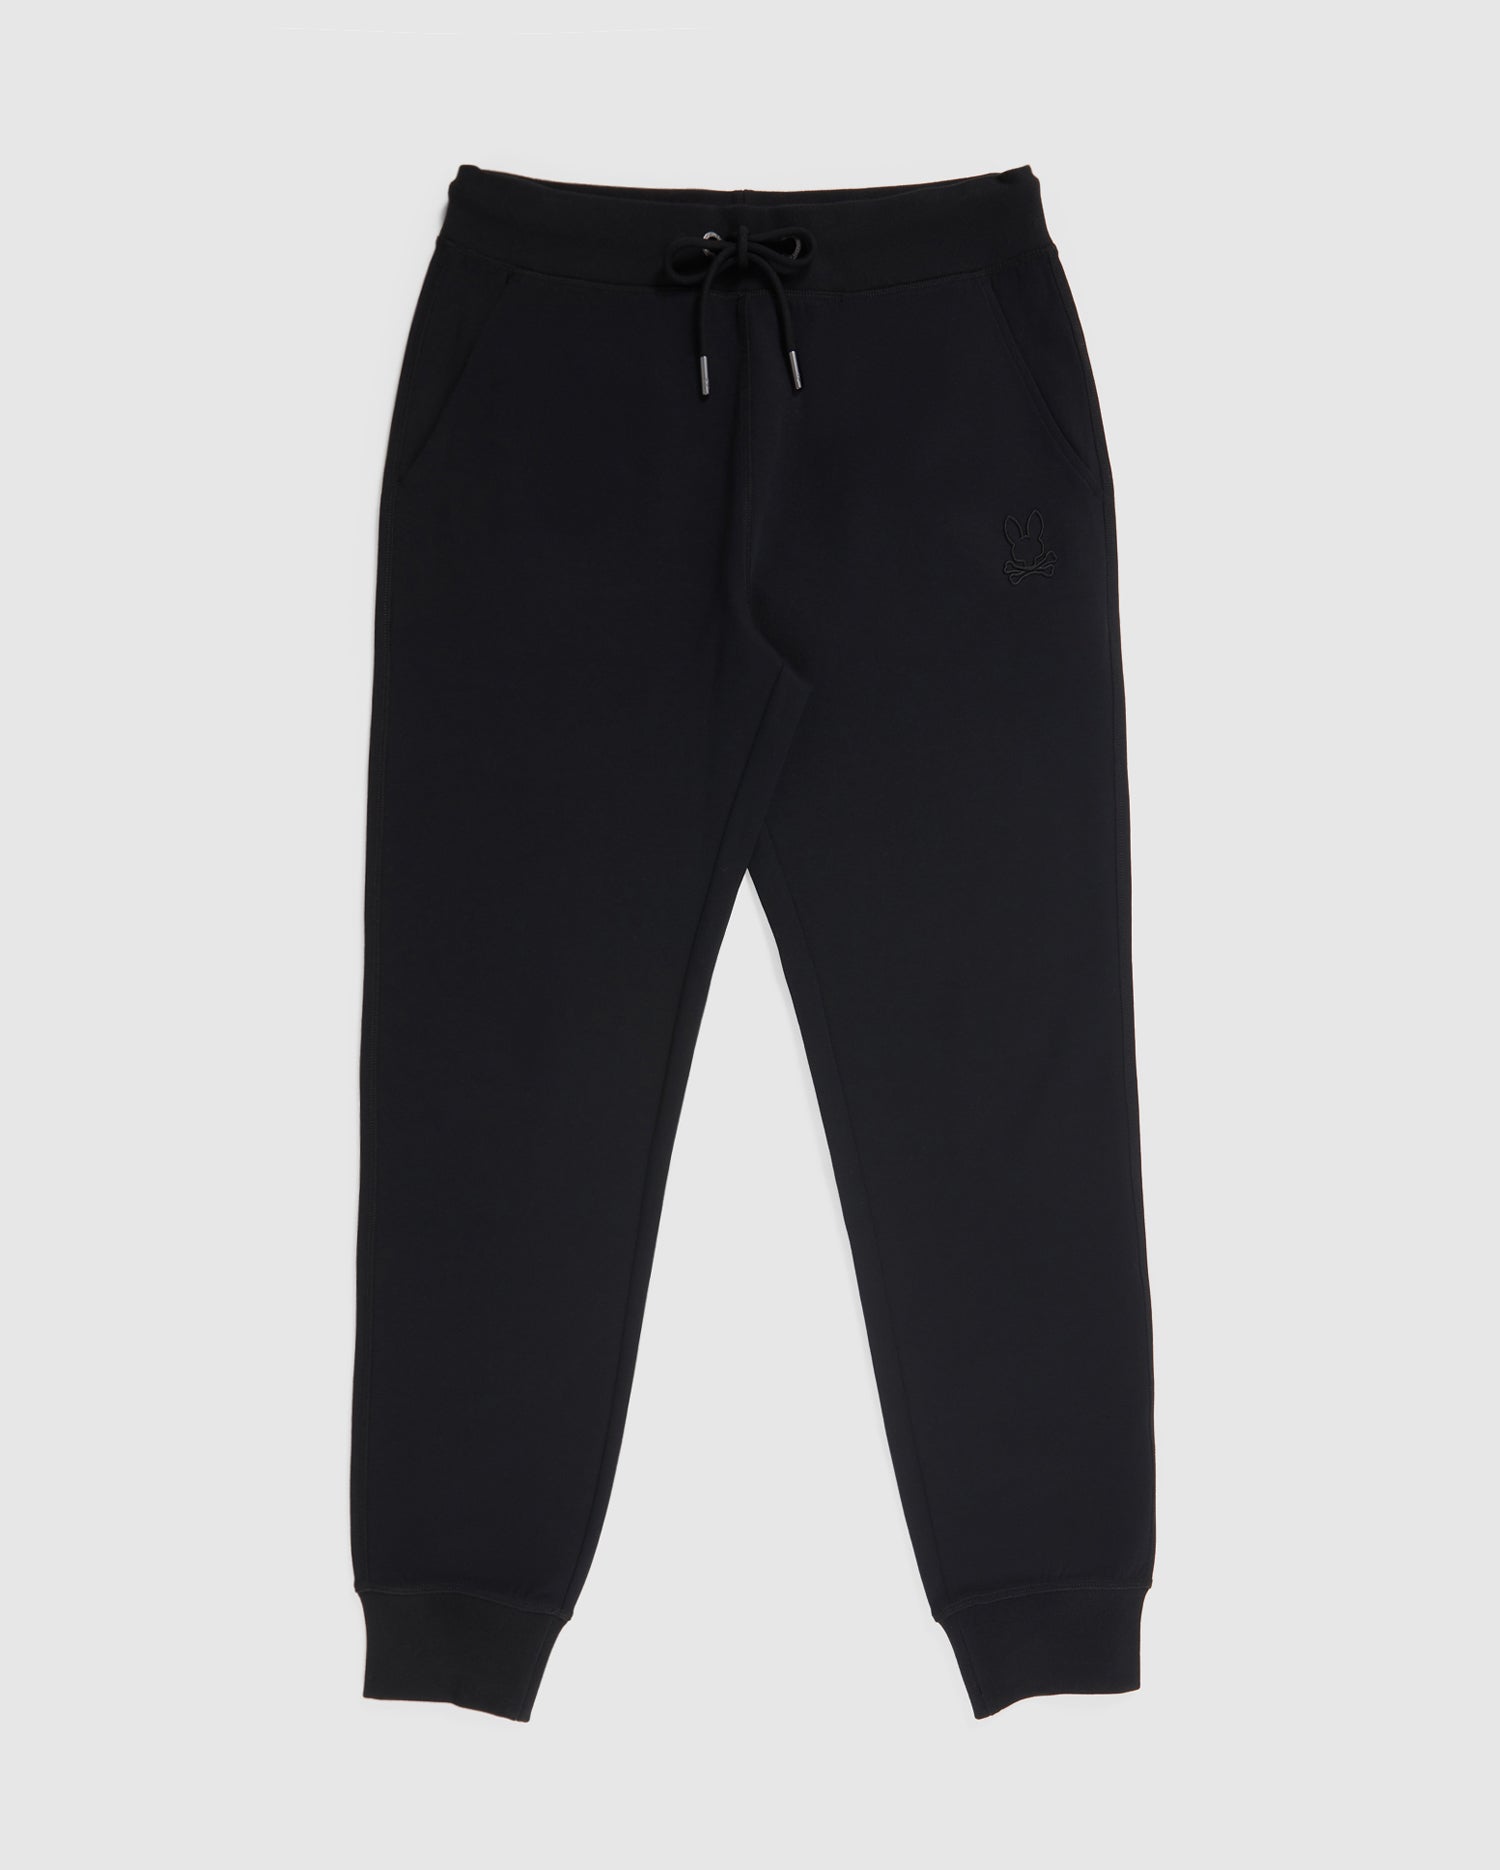 Black/black Sweatpants With Re-nylon Details